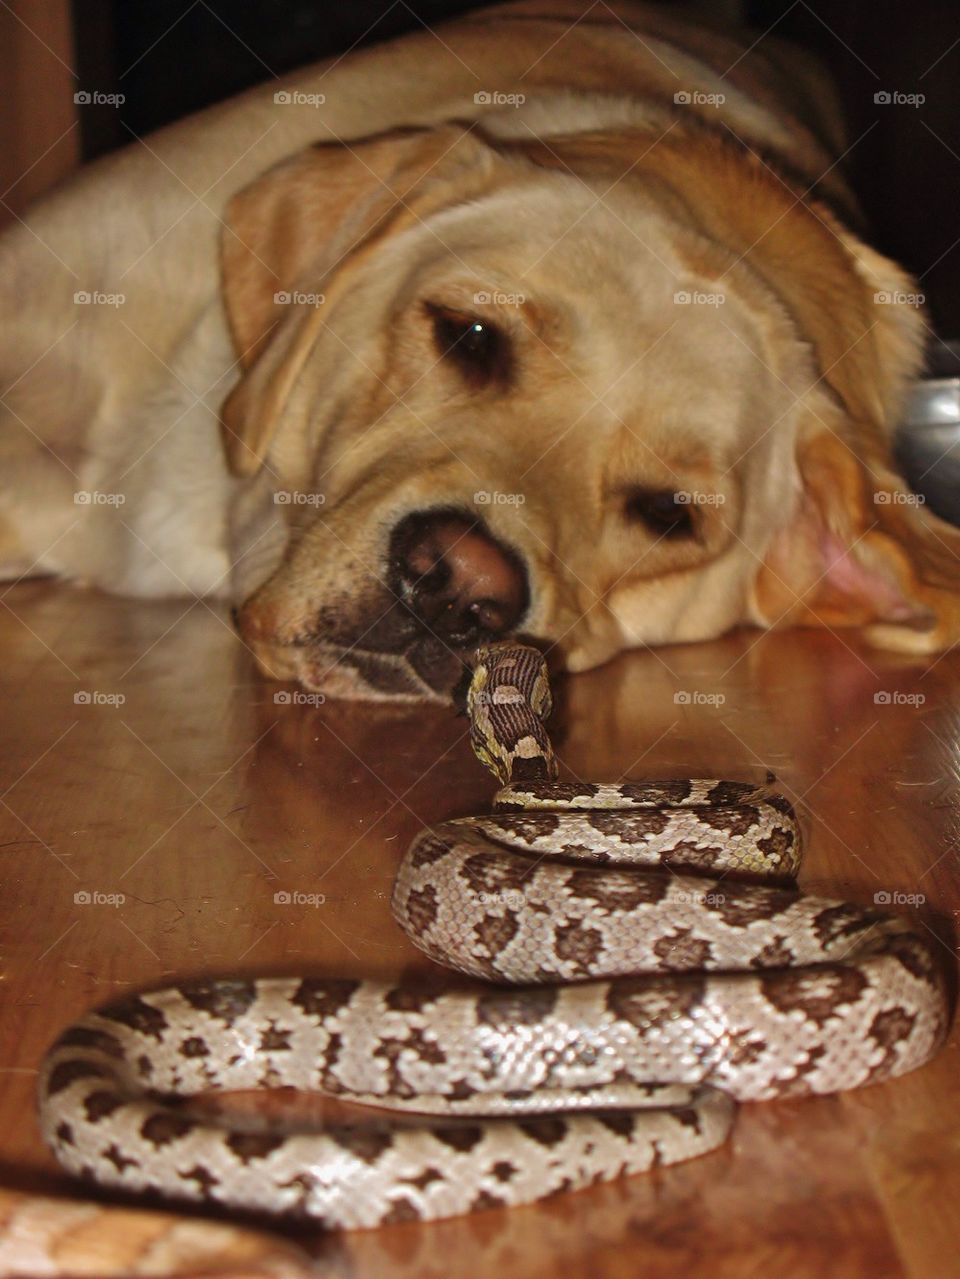 Dog and snake